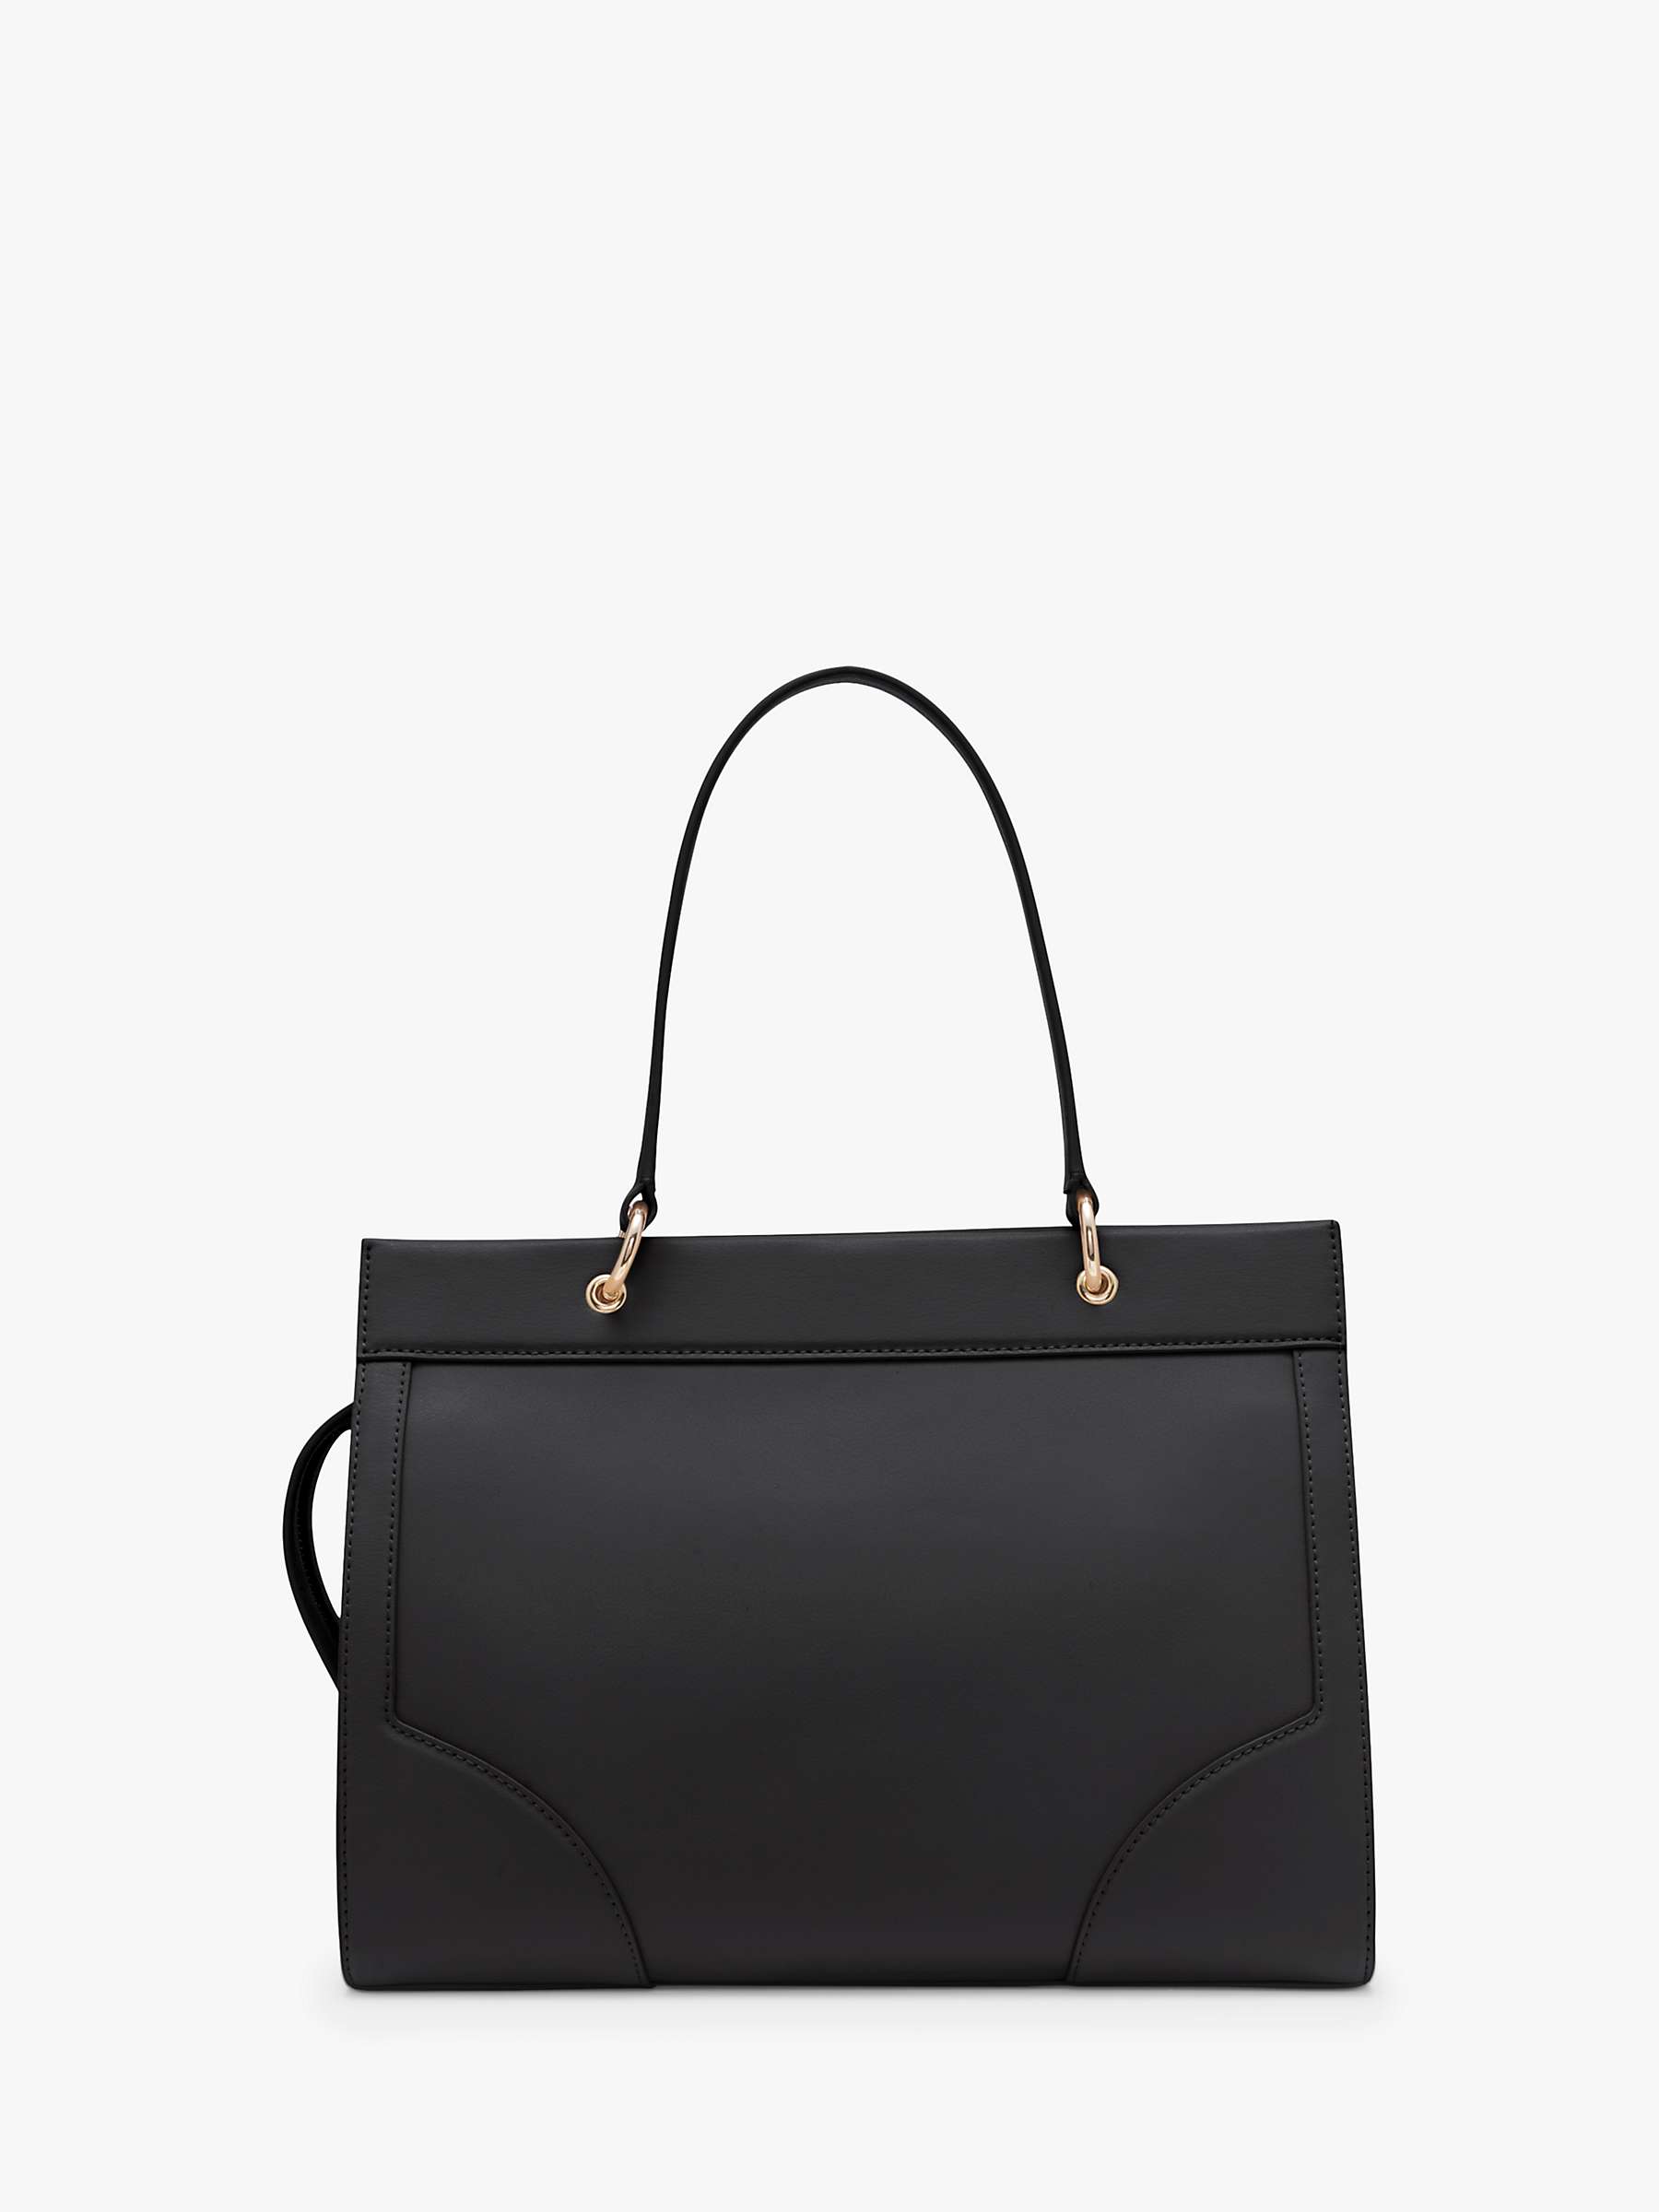 Buy DKNY Gramercy Leather Satchel Bag, Black Online at johnlewis.com